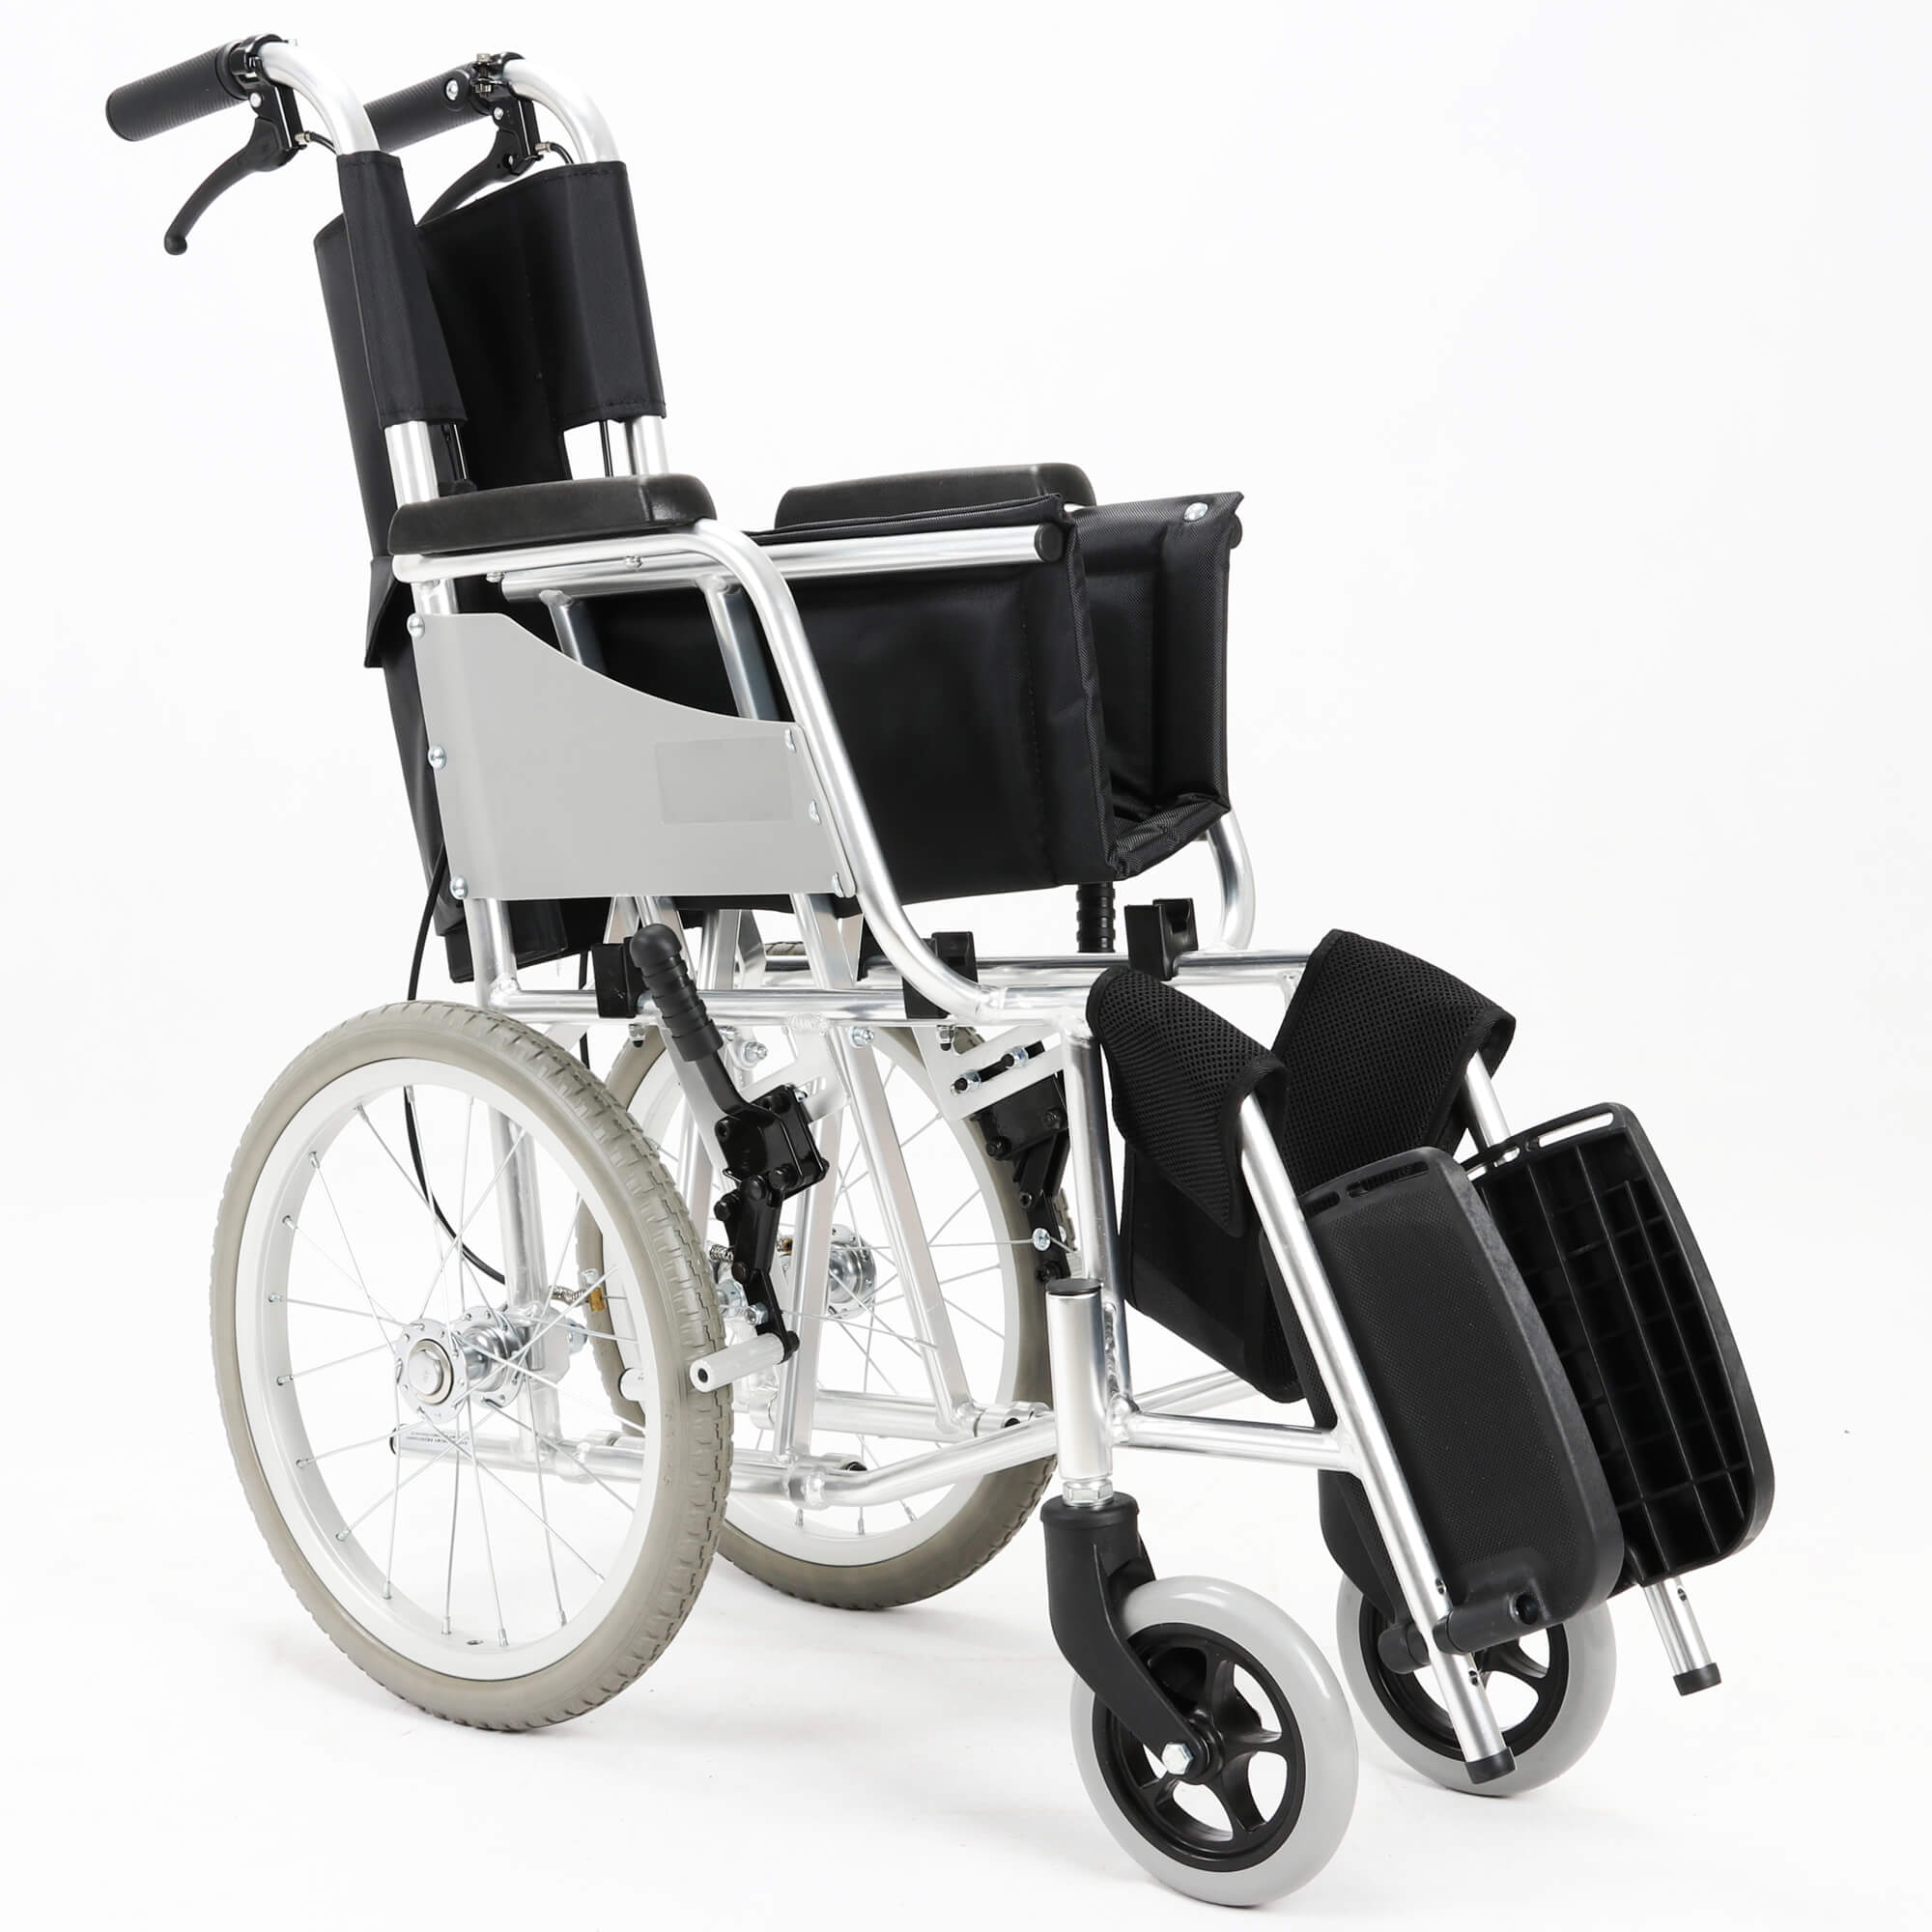 ¿Cuáles son los materiales de la silla de ruedas?